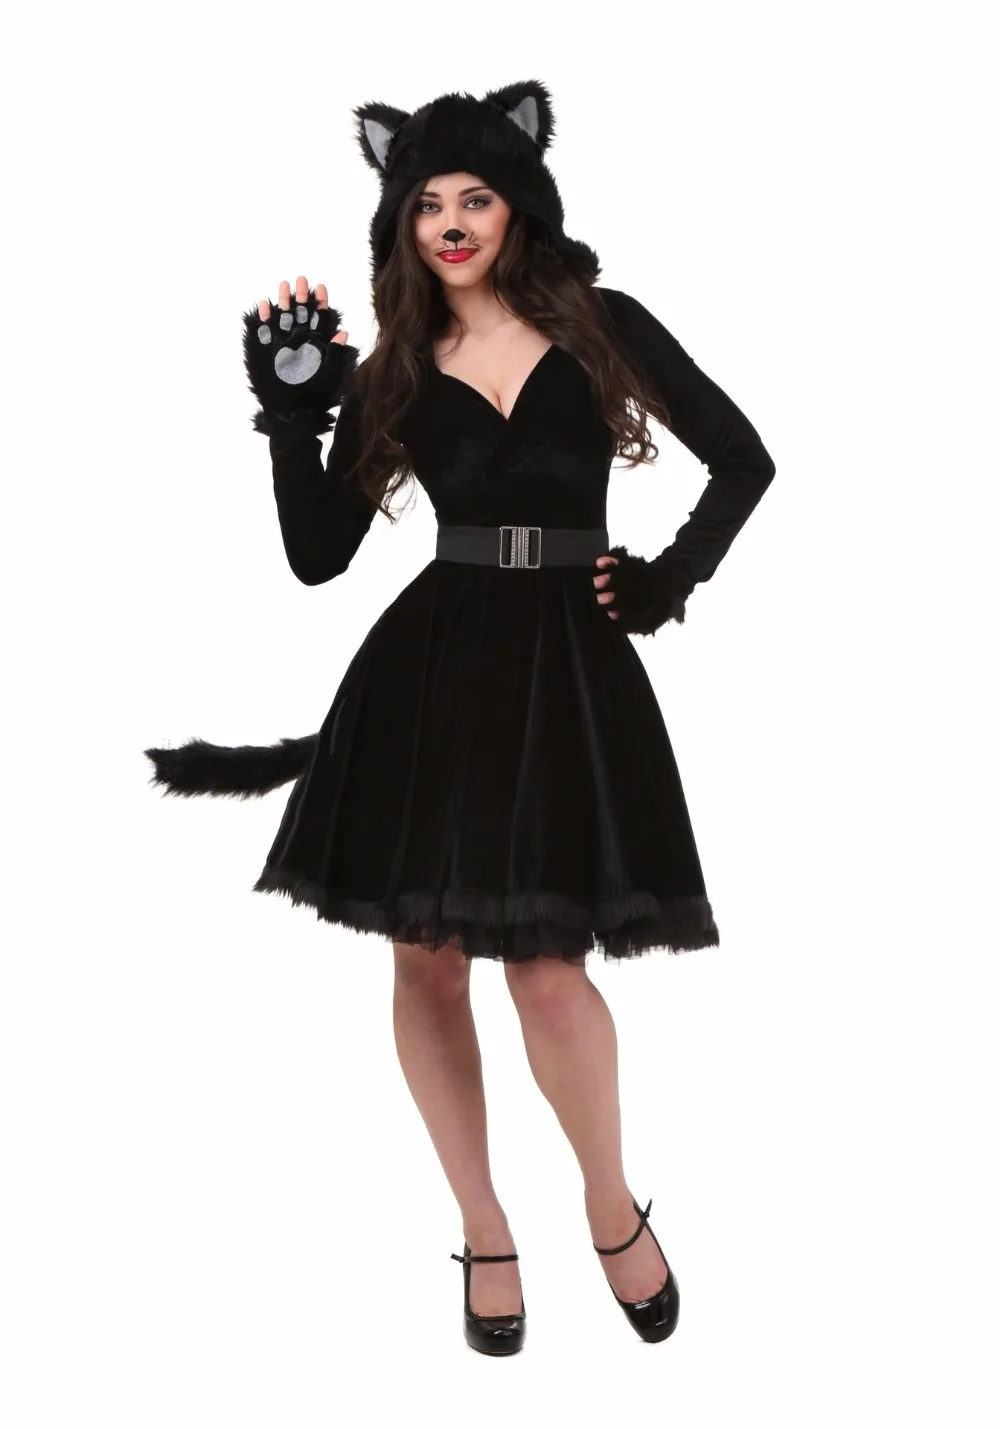 Костюм черного кота для взрослых на Хэллоуин для мужчин и женщин, костюмы для косплея, милый костюм животного, одежда для сцены